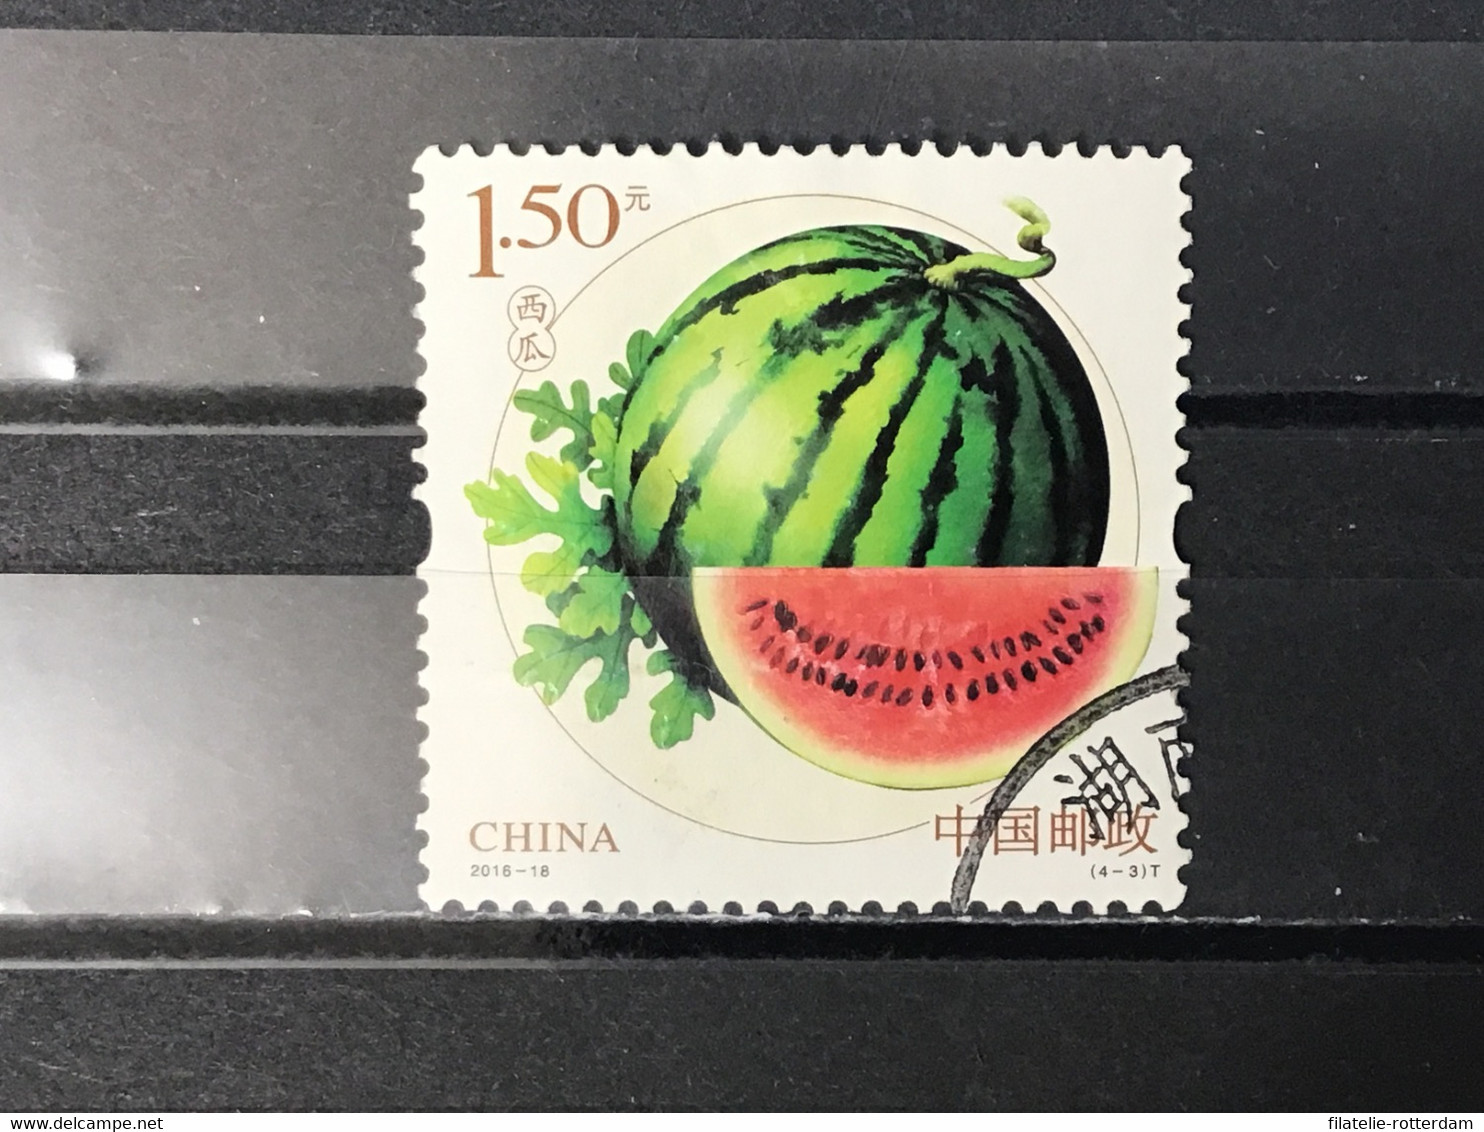 China - Vruchten (1.50) 2016 - Gebraucht